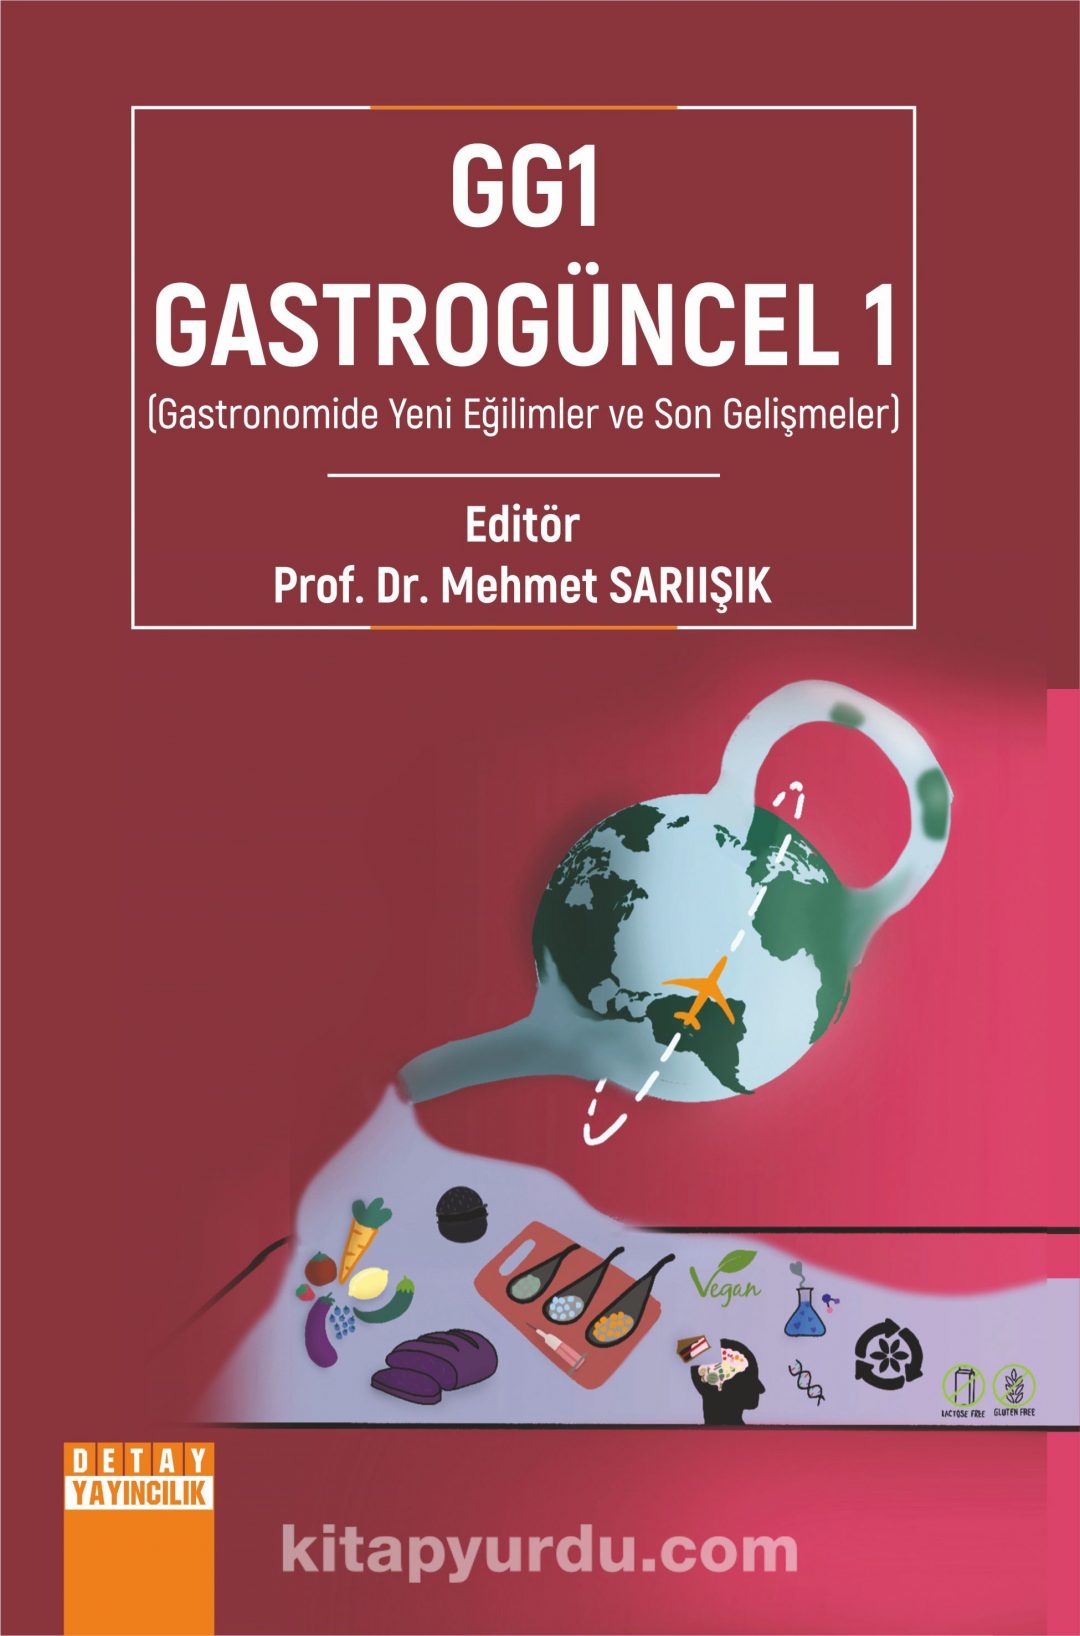 GG1-Gastrogüncel 1 (Gastronomide Yeni Eğilimler ve Son Gelişmeler)